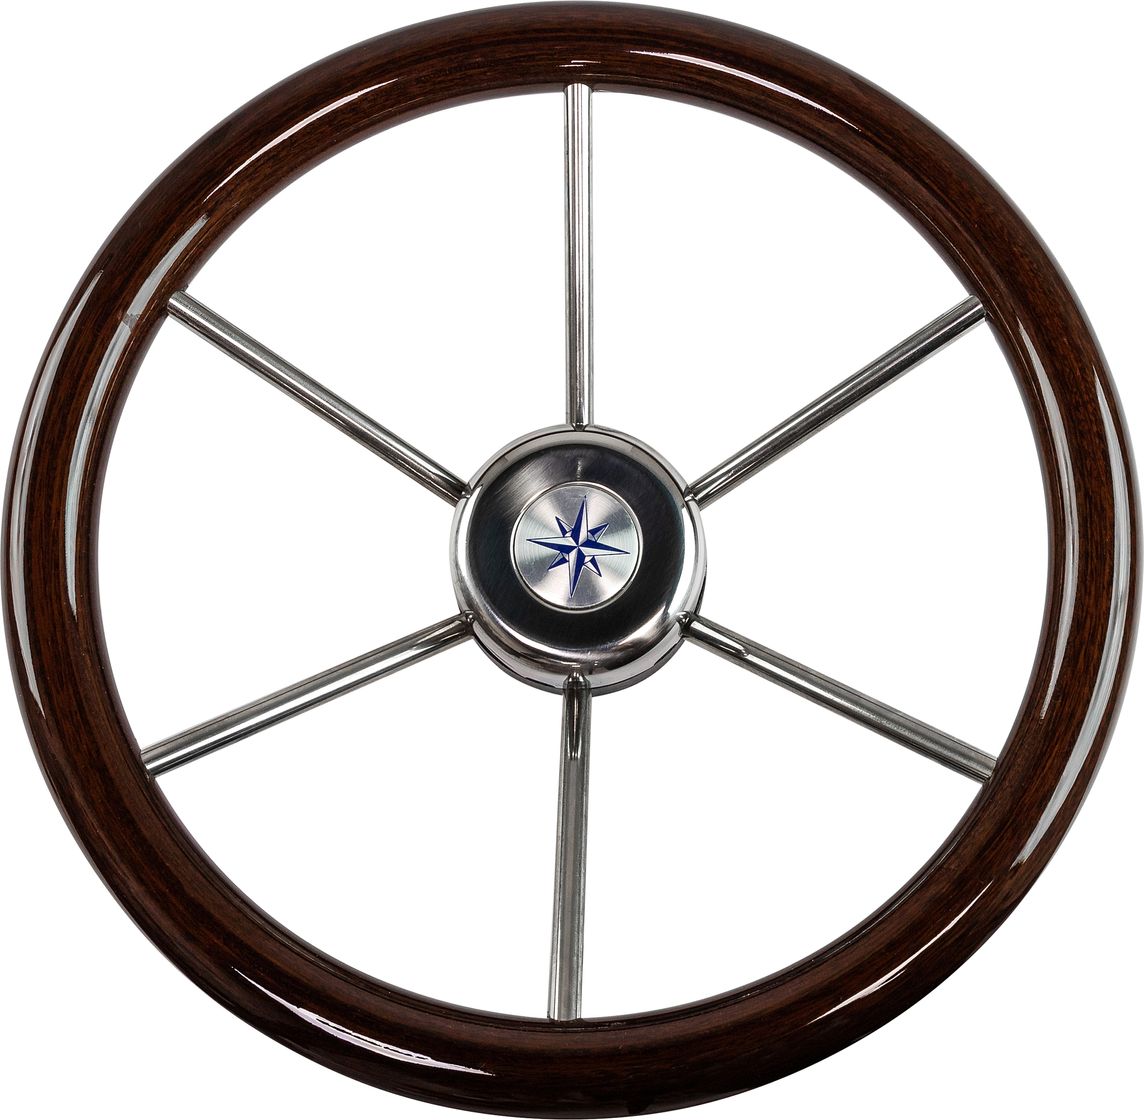 Рулевое колесо LEADER WOOD деревянный обод серебряные спицы д. 360 мм VN7360-33 рулевое колесо leader tanegum белый обод серебряные спицы д 360 мм vn7360 08